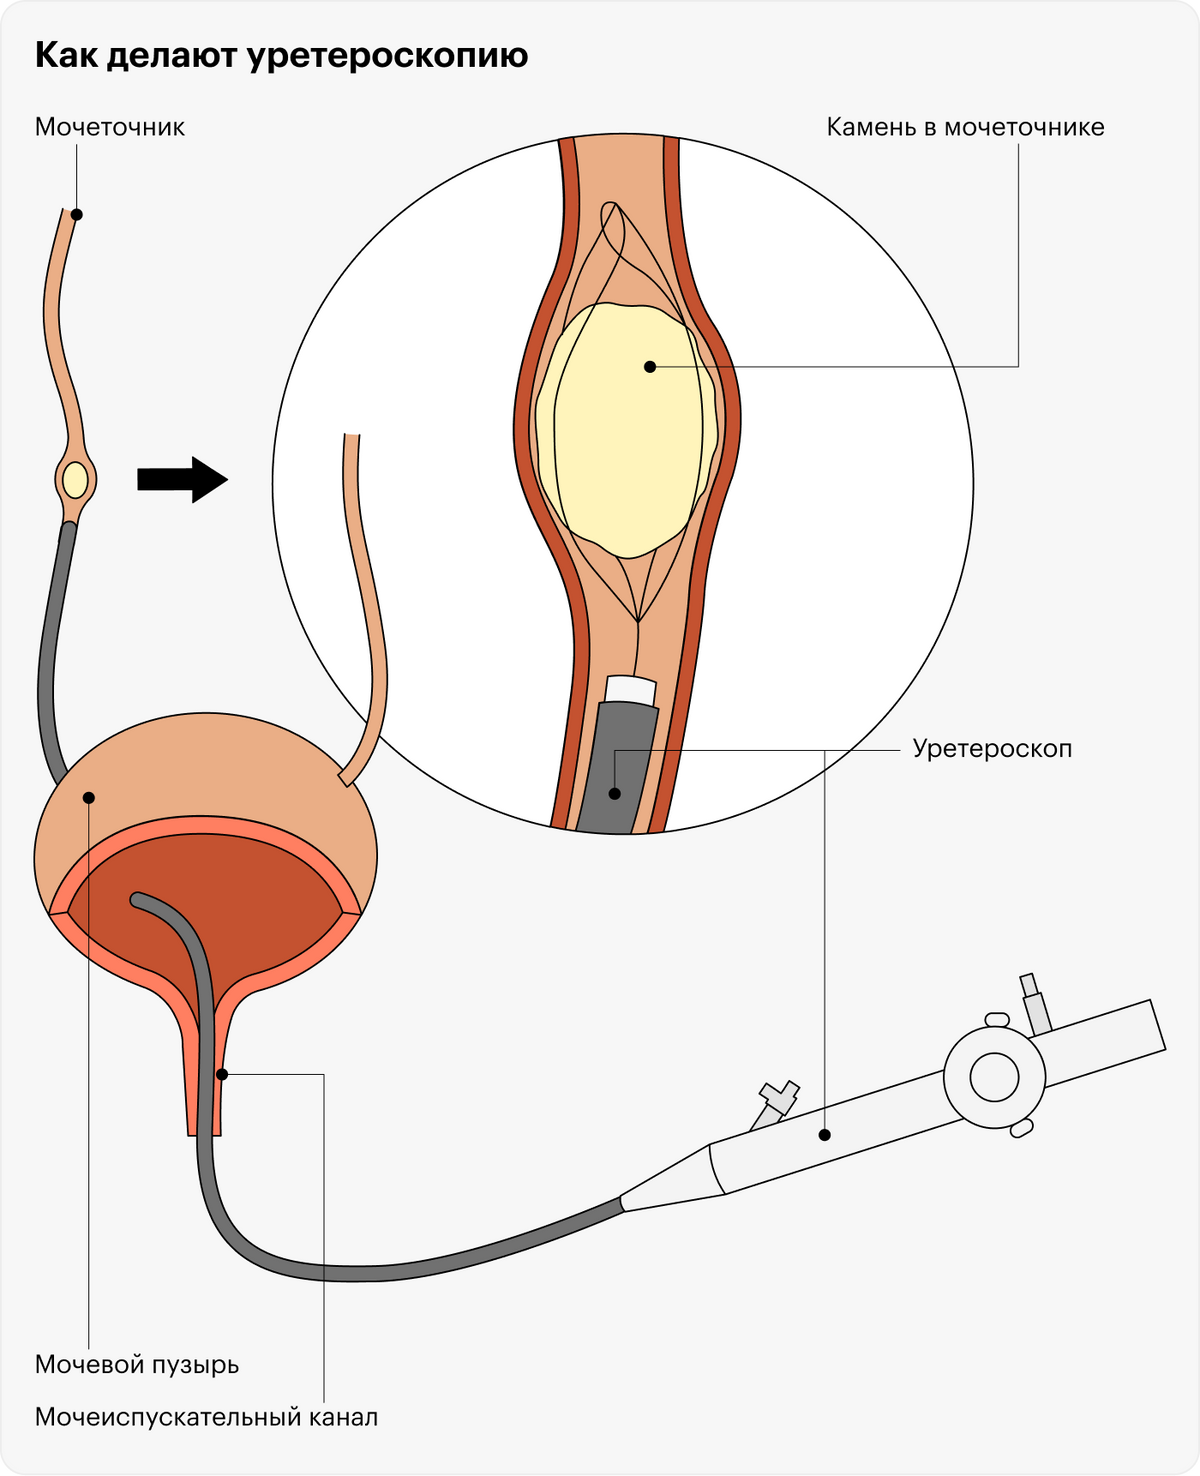 При&nbsp;уретероскопии камень удаляют или разрушают с помощью эндоскопического прибора, который вводят через мочеиспускательный канал